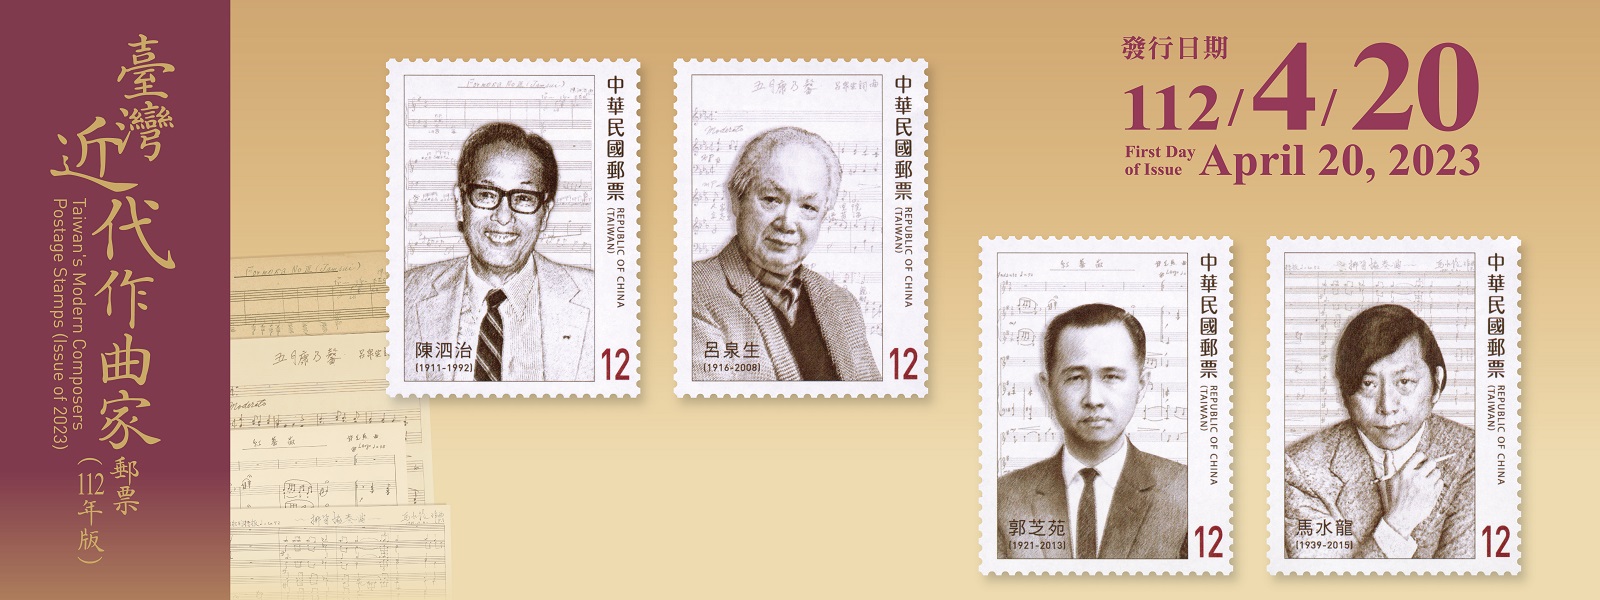 廣告連結:特734 臺灣近代作曲家郵票(112年版)